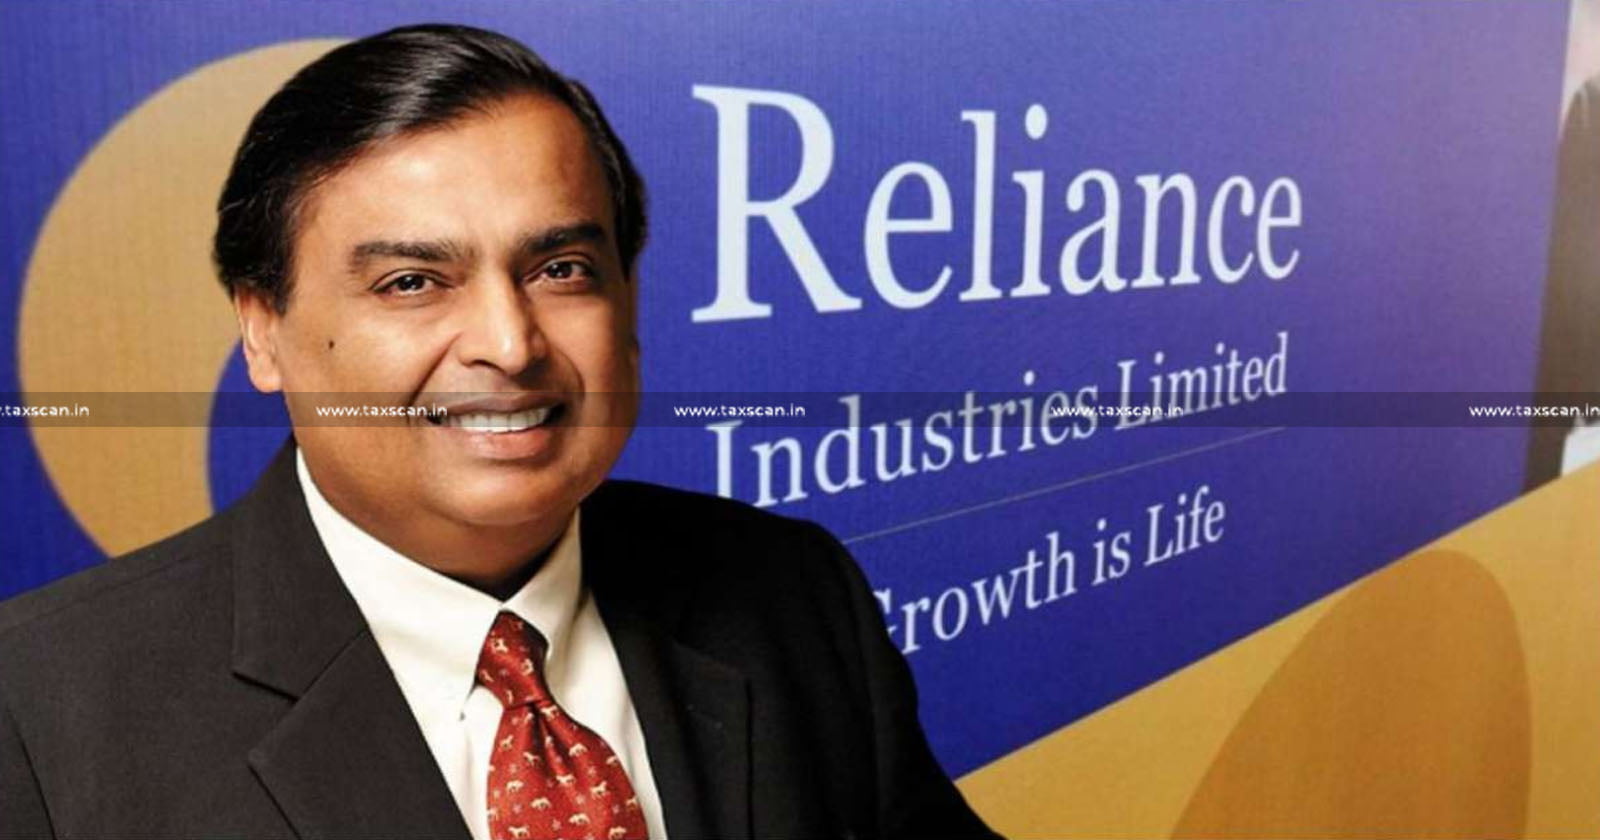 Reliance Industries - Delhi HC - USD Arbitral Award Claim against RIL - Unenforceable - TAXSCAN